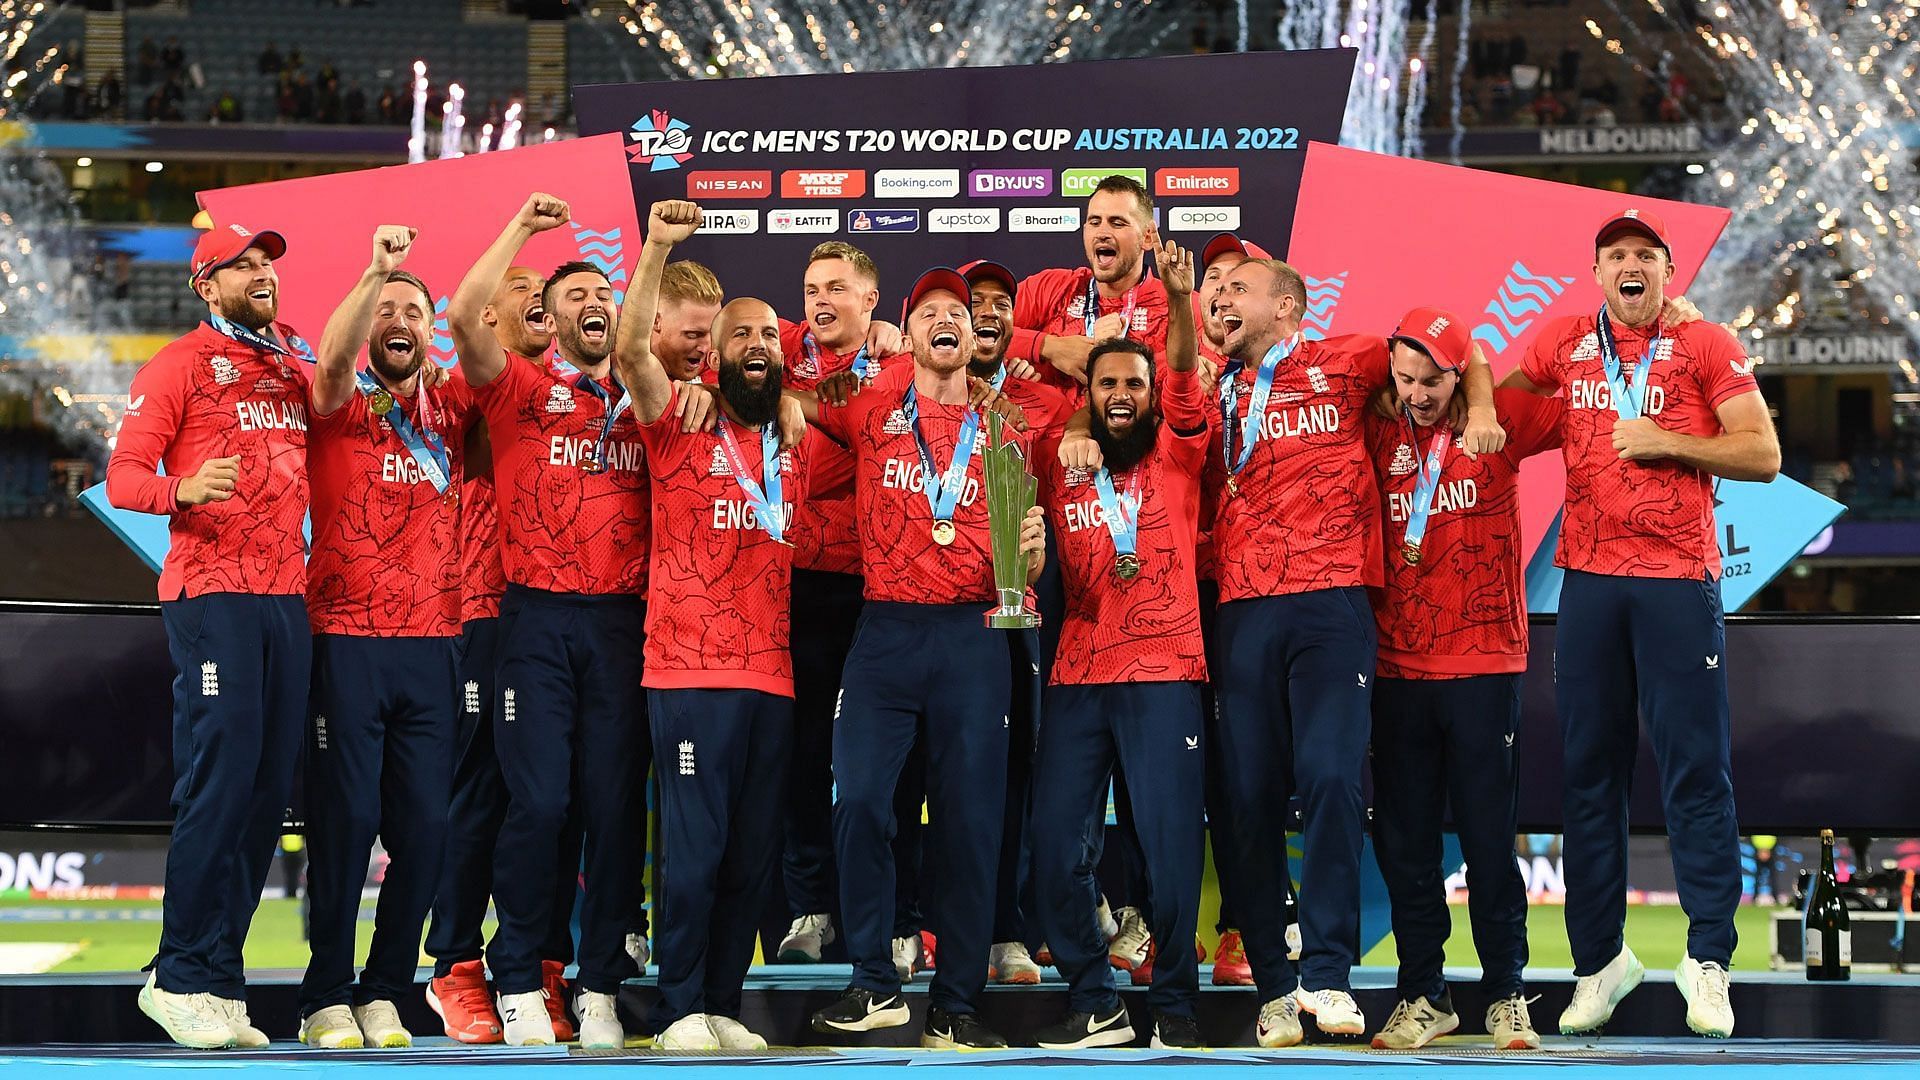 वर्ल्ड कप जीत का जश्न मनाते हुई इंग्लैंड टीम 